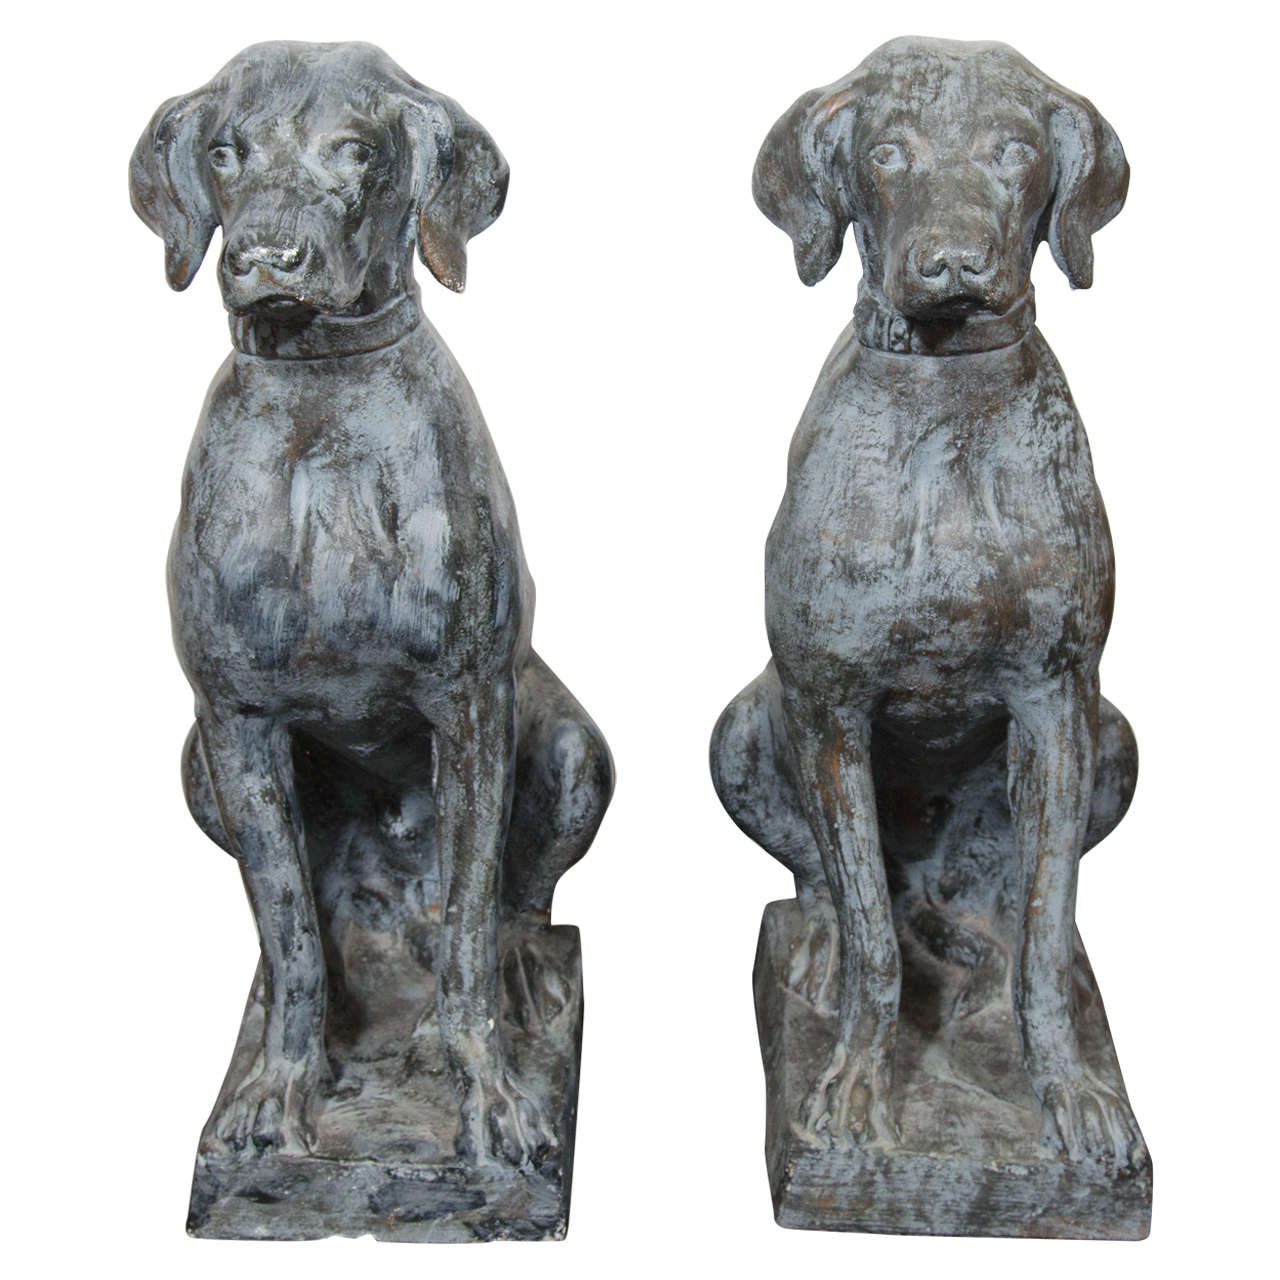 A Pair of Labrador Retriever Sculptures by Tuscany Studio